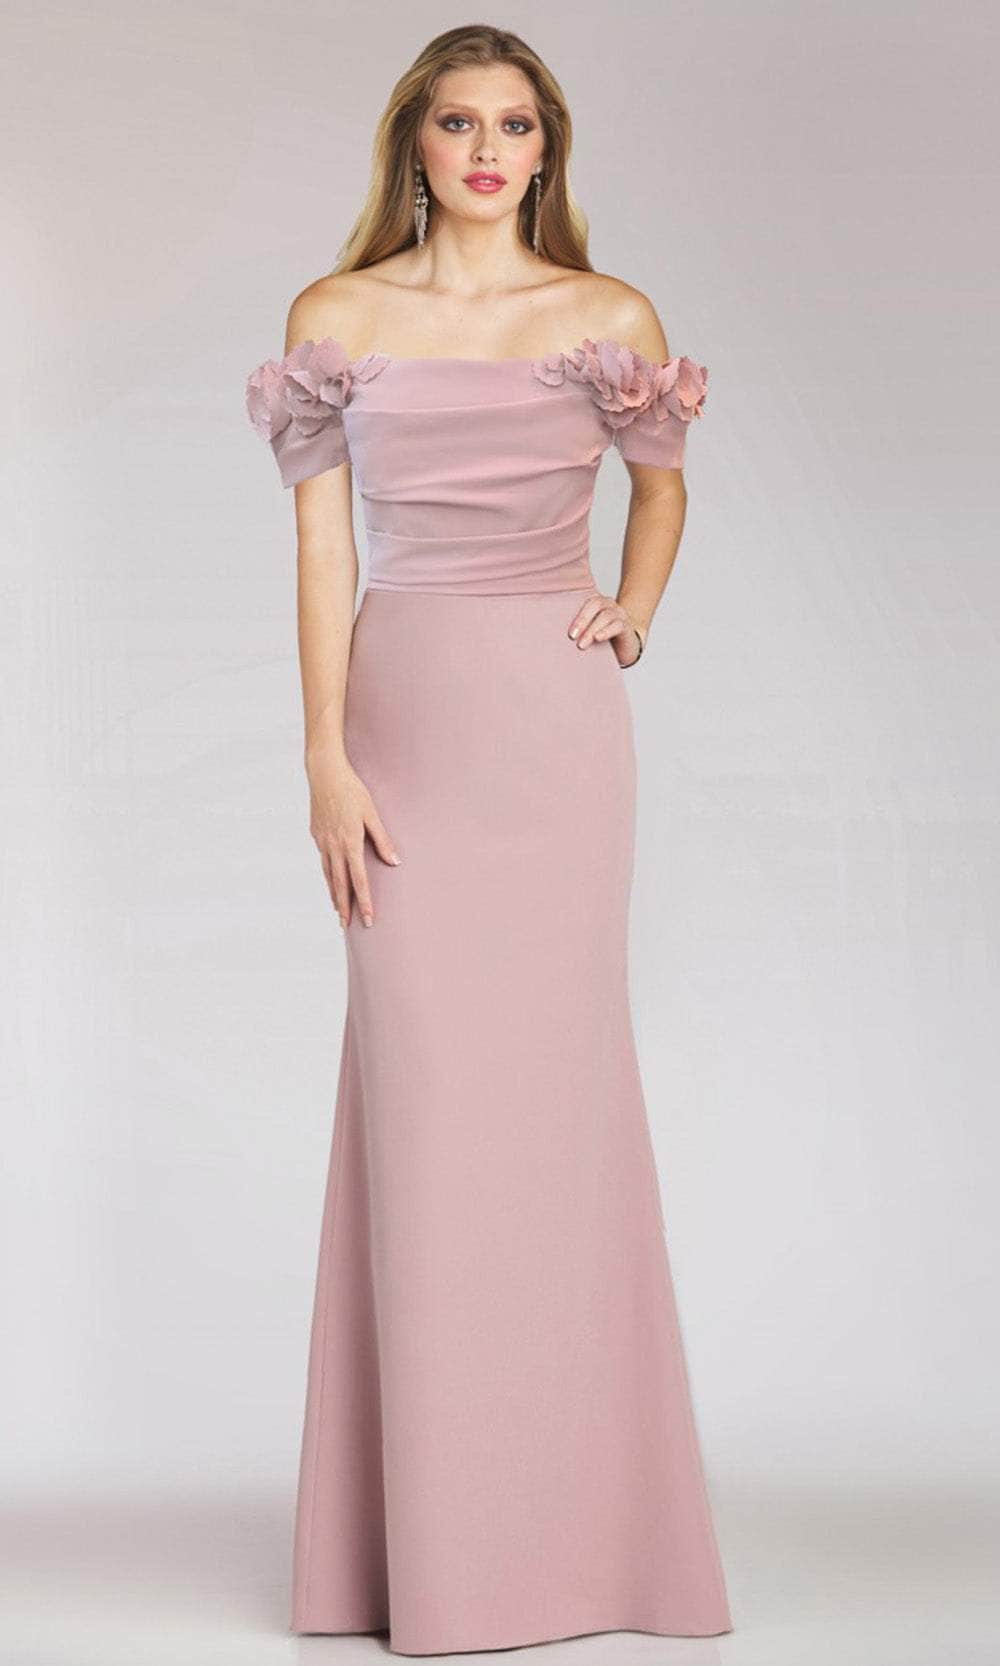 Gia Franco 12220 - Floral Applique Evening Dress
